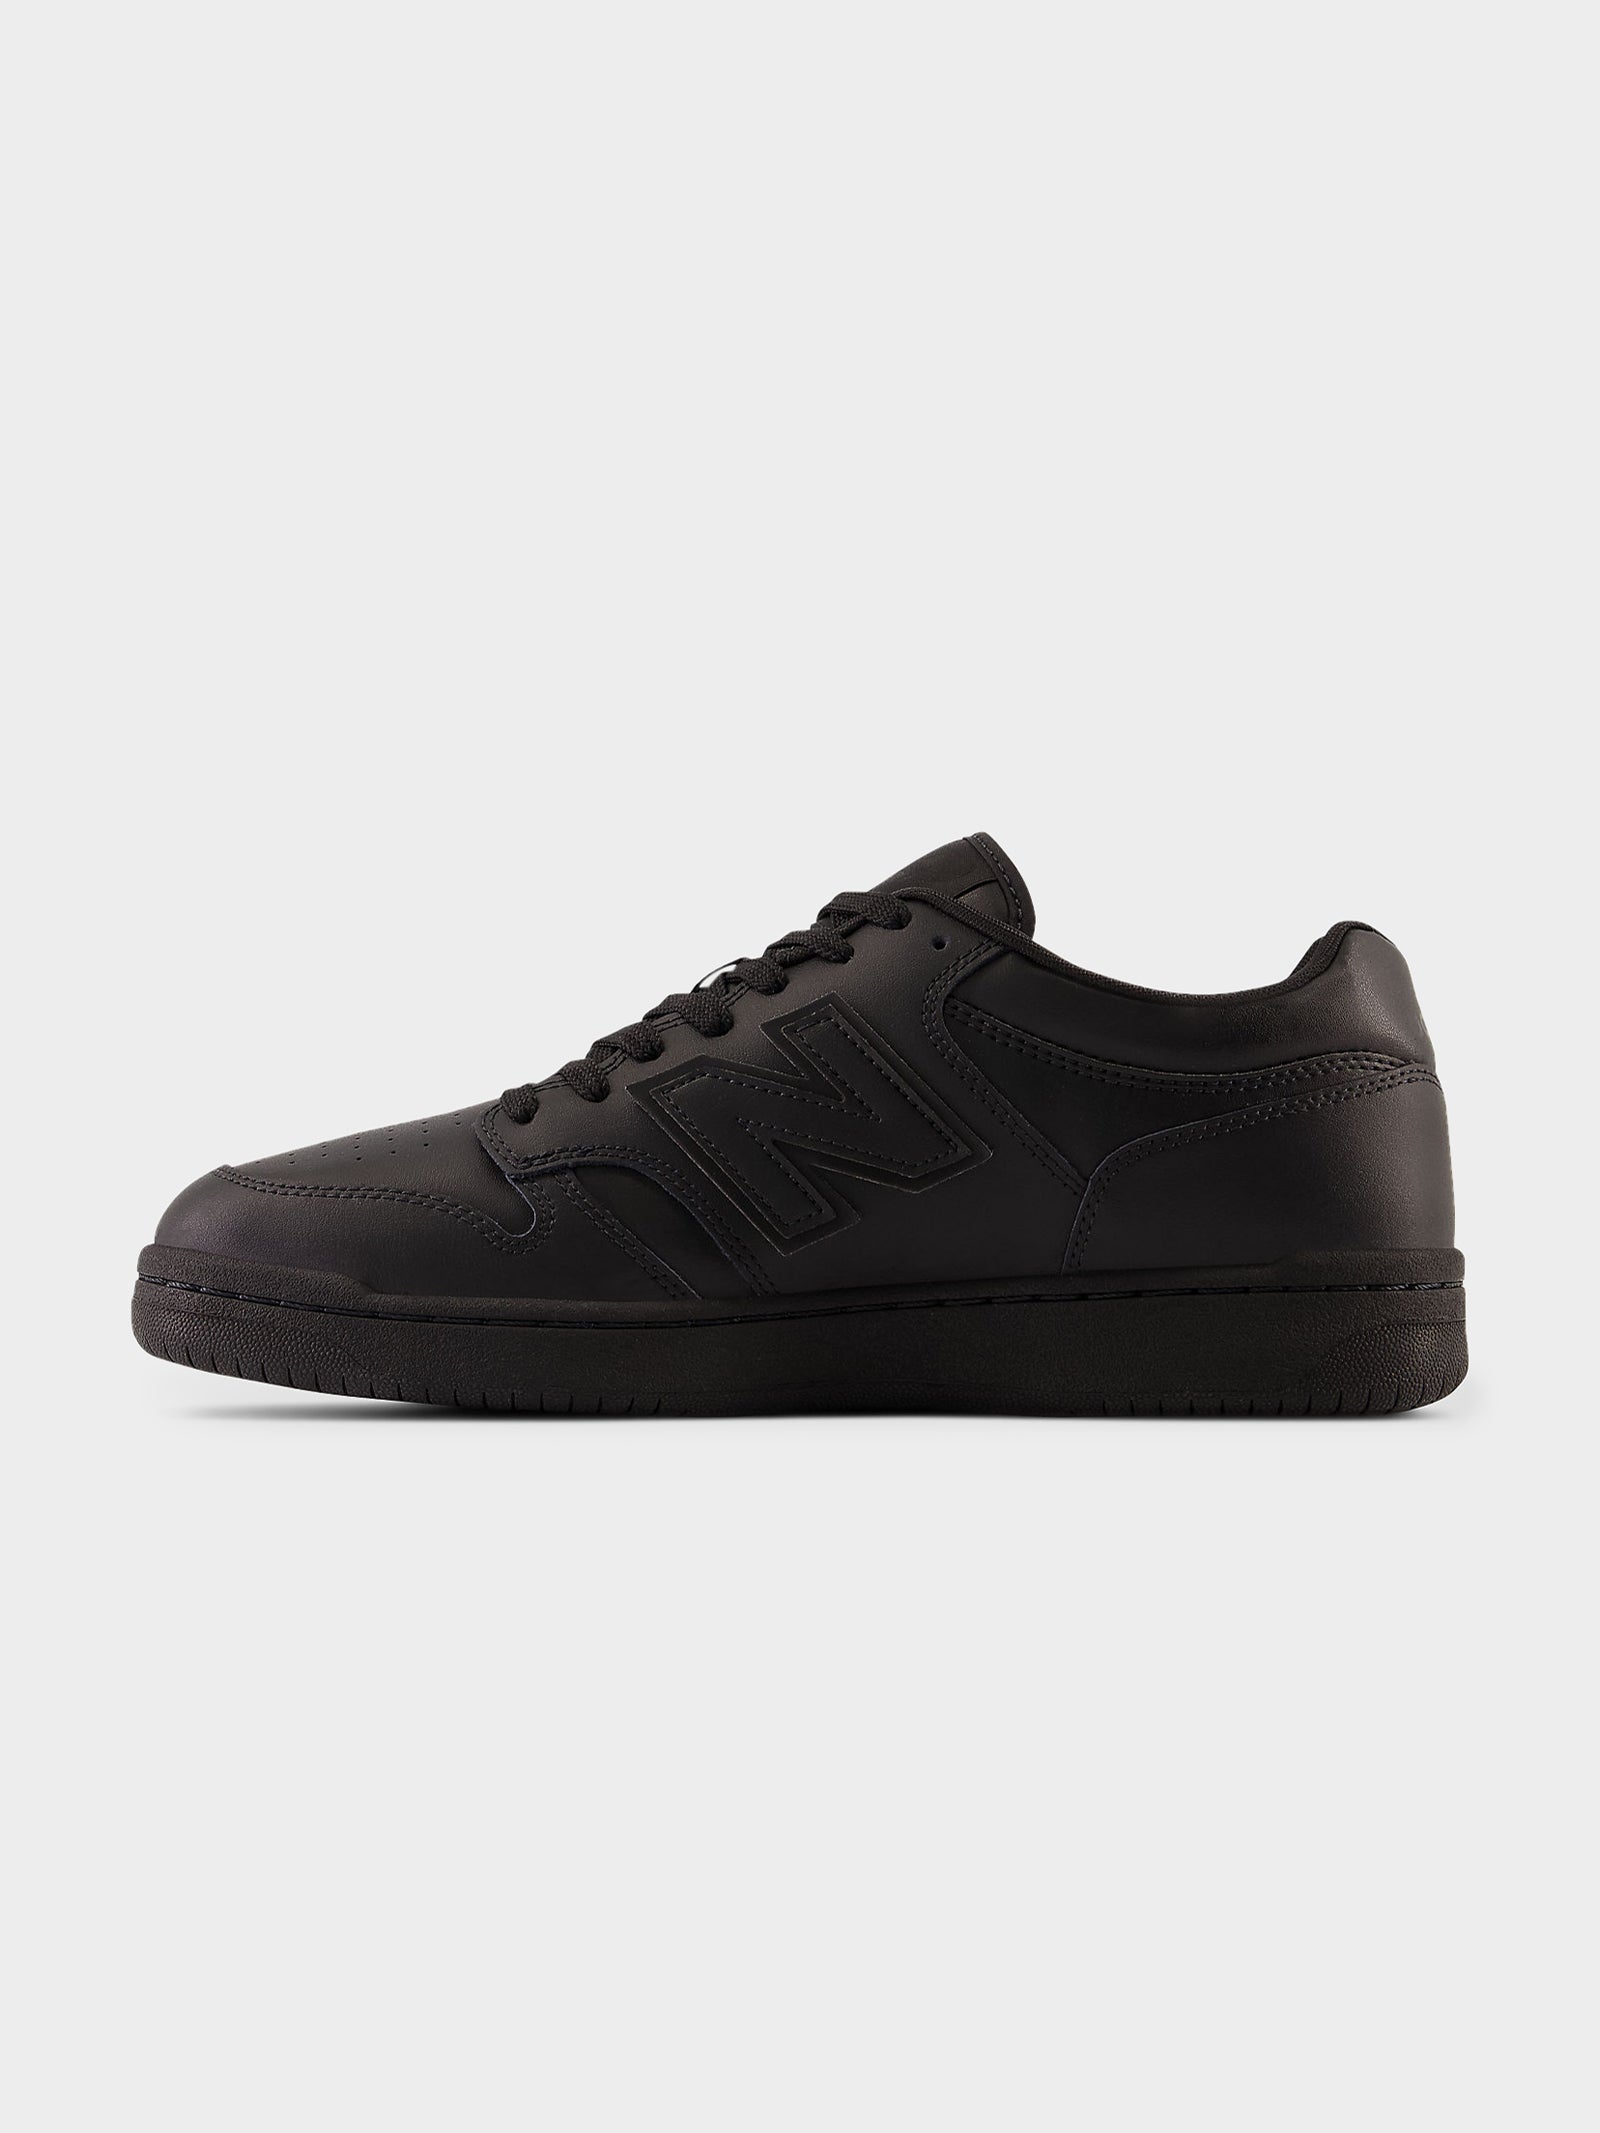 Unisex 480 Sneakers in Black